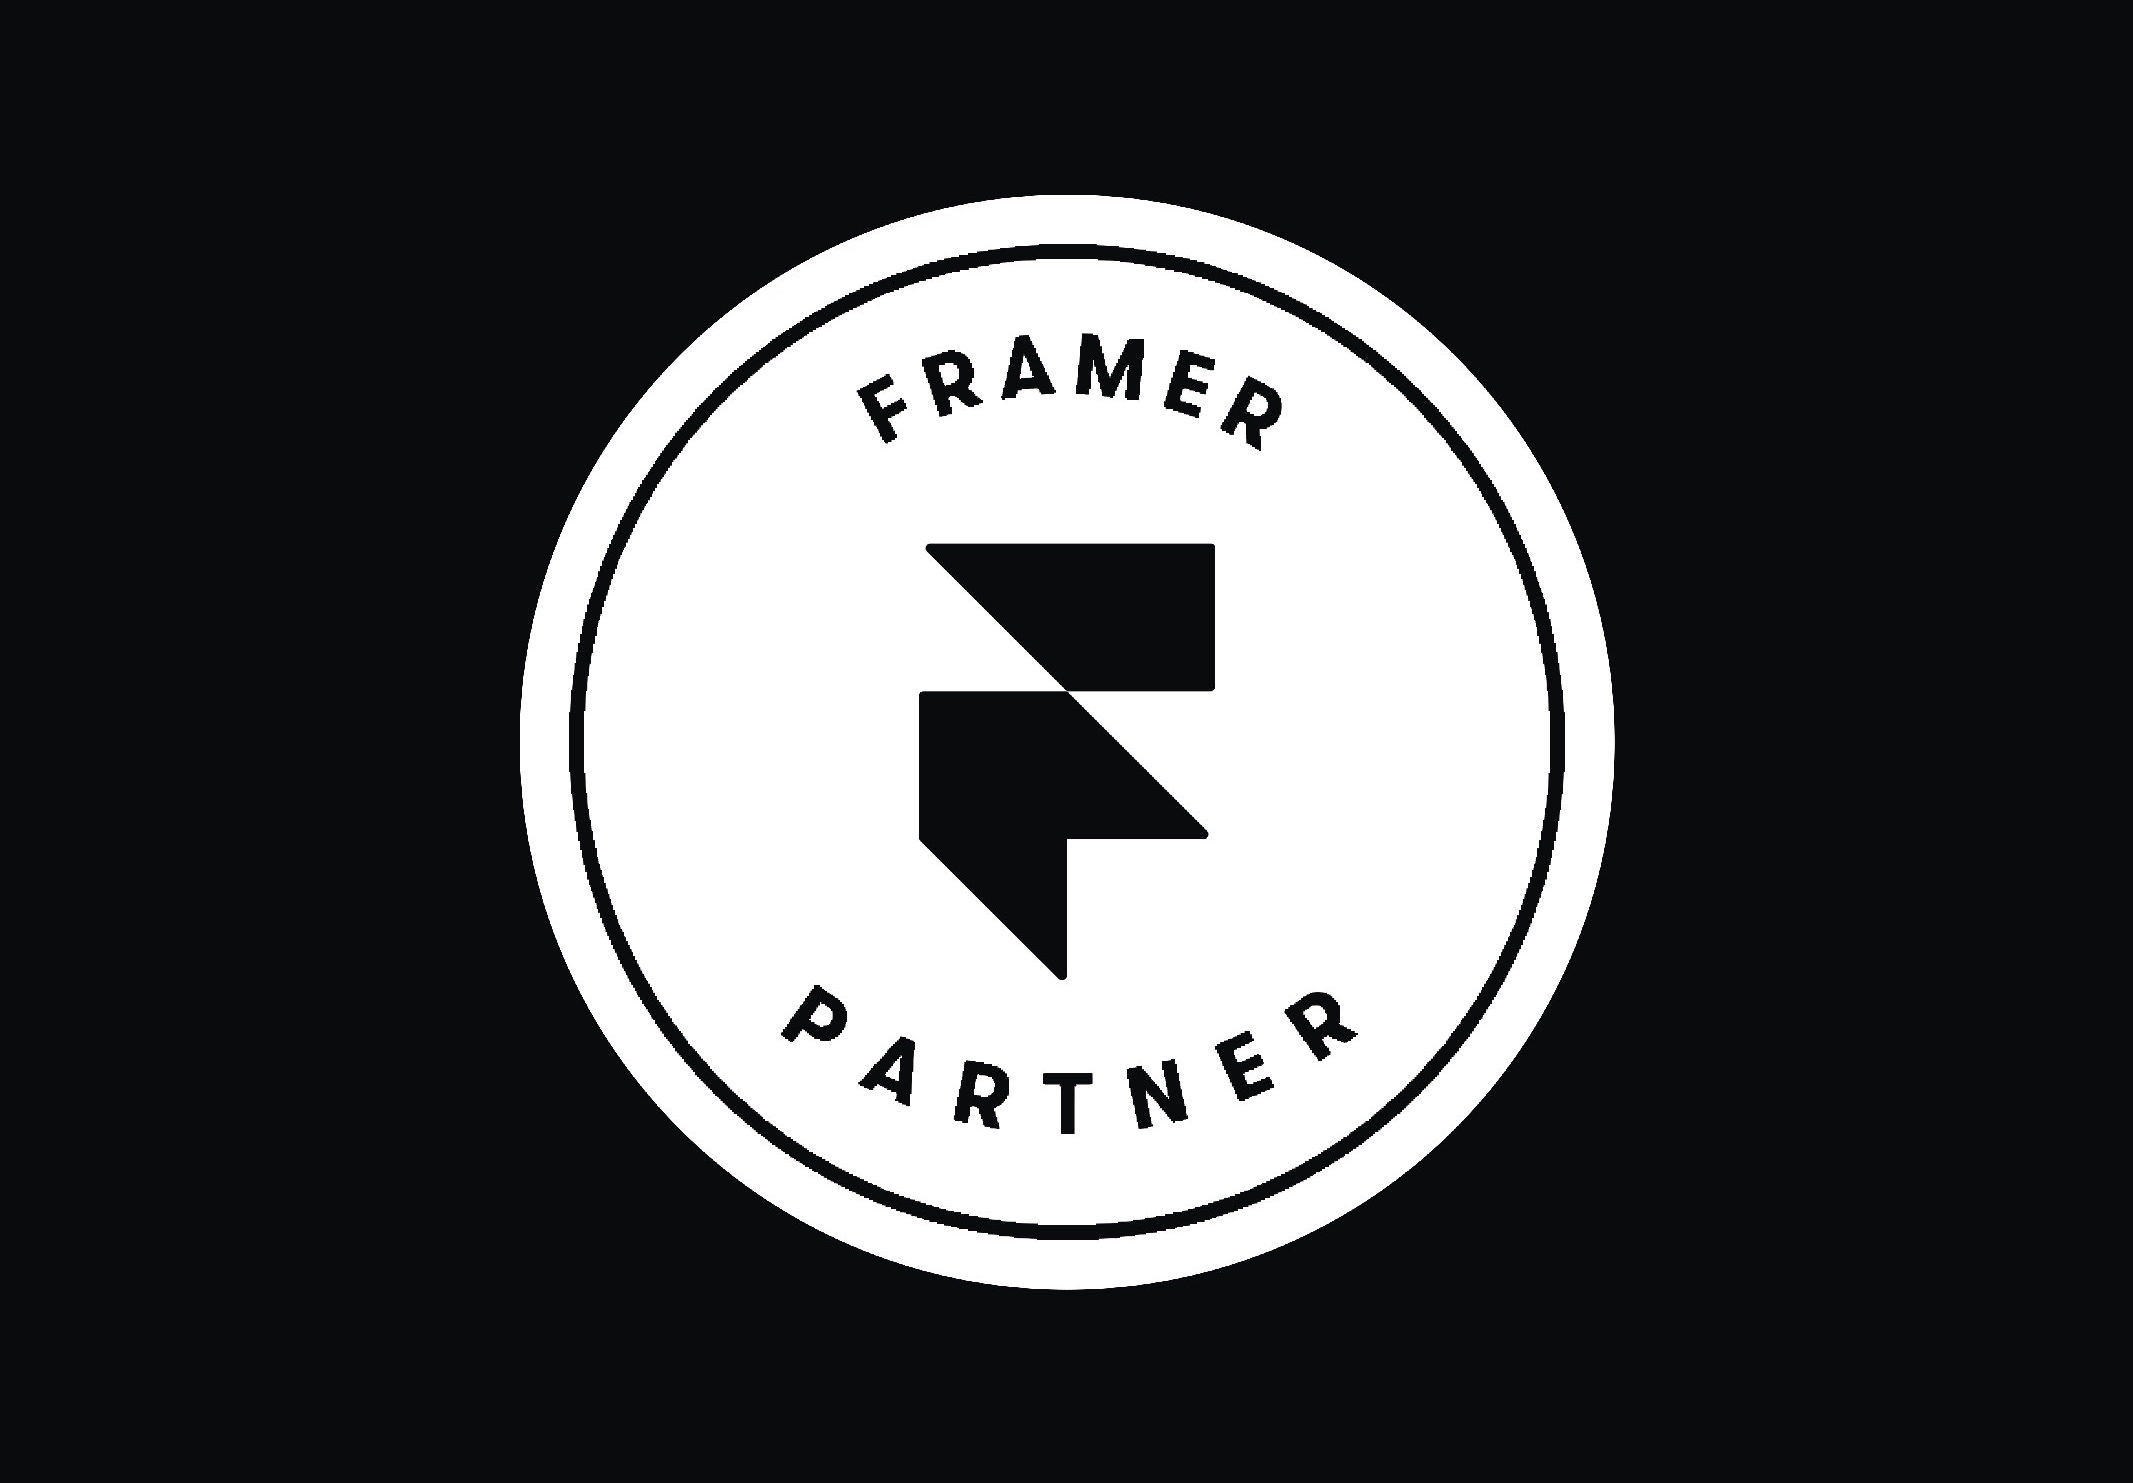 FramerPartner-aspect-ratio-670-466